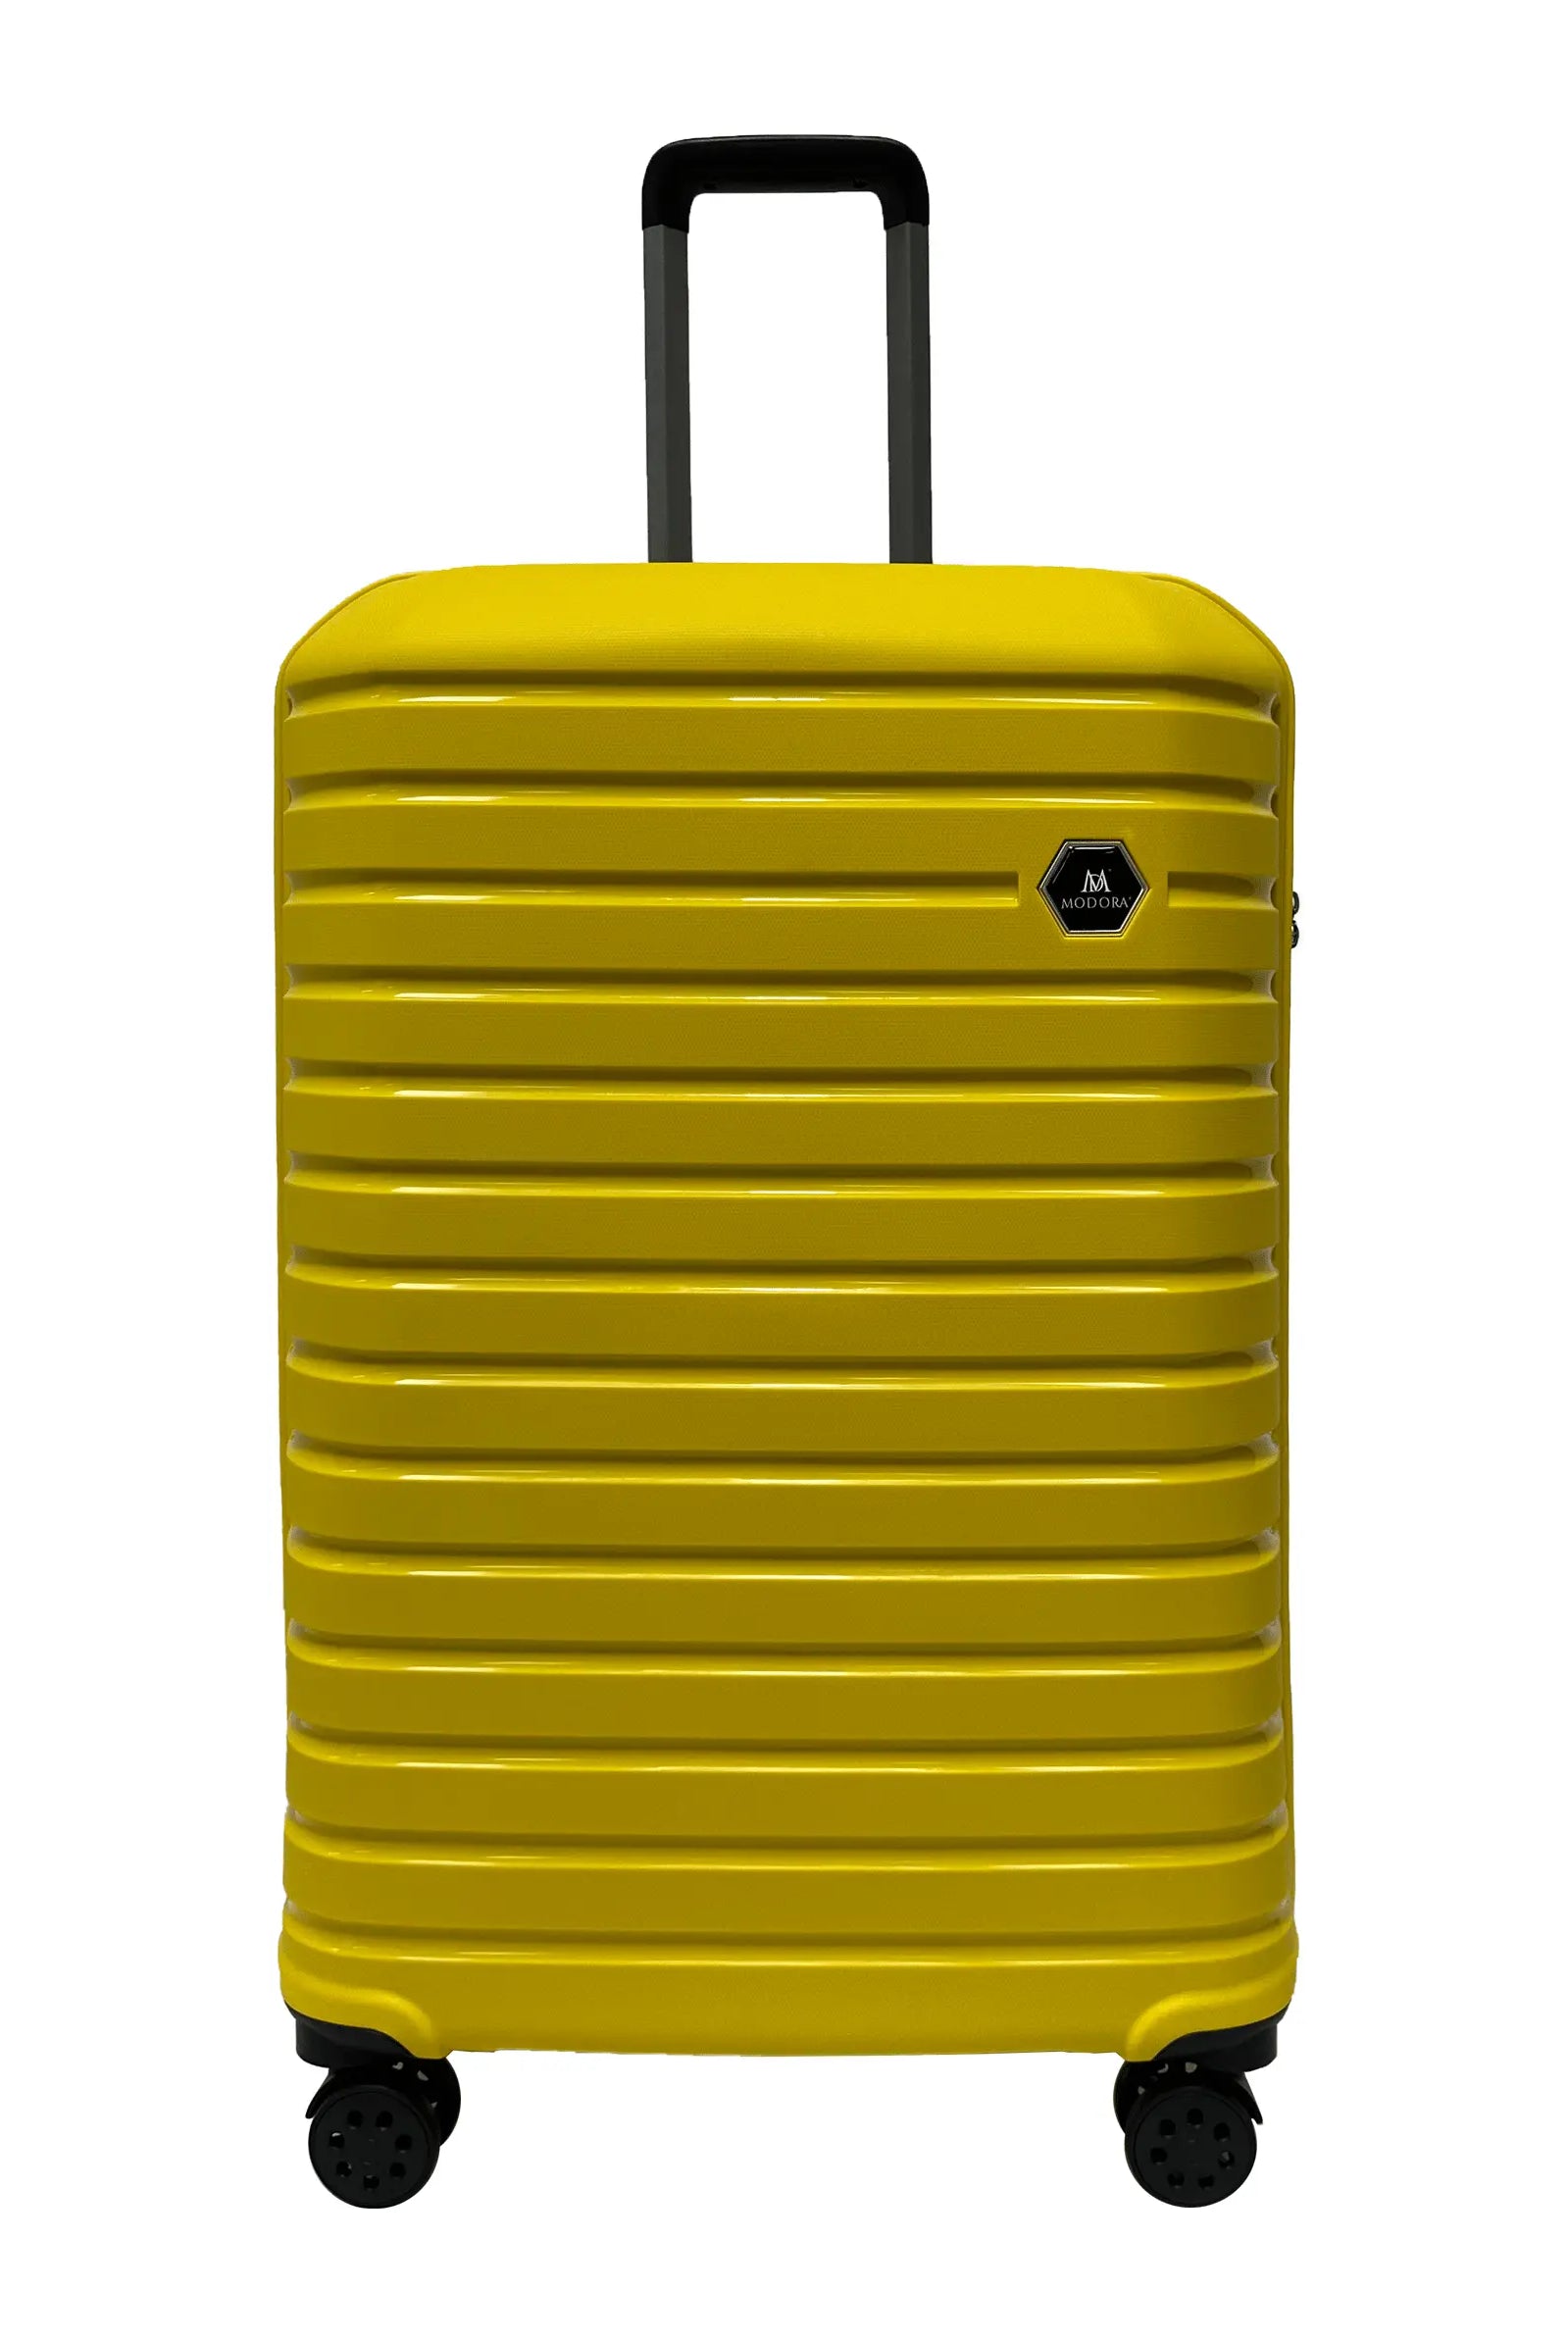 Large yellow suitcase